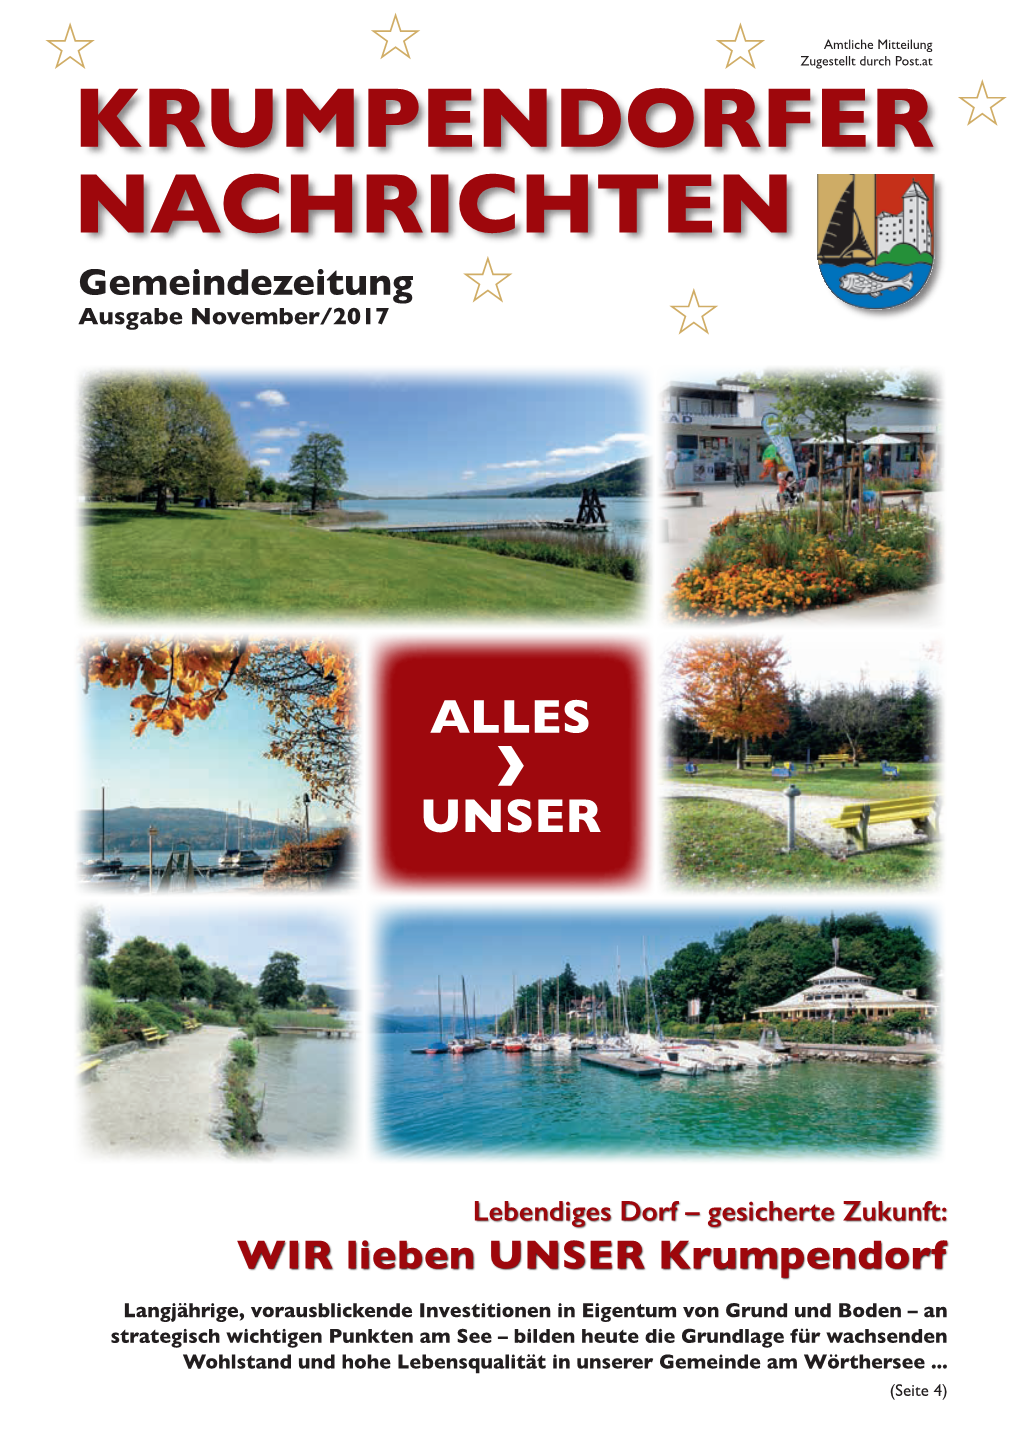 Gemeindezeitung-3-2017.Pdf